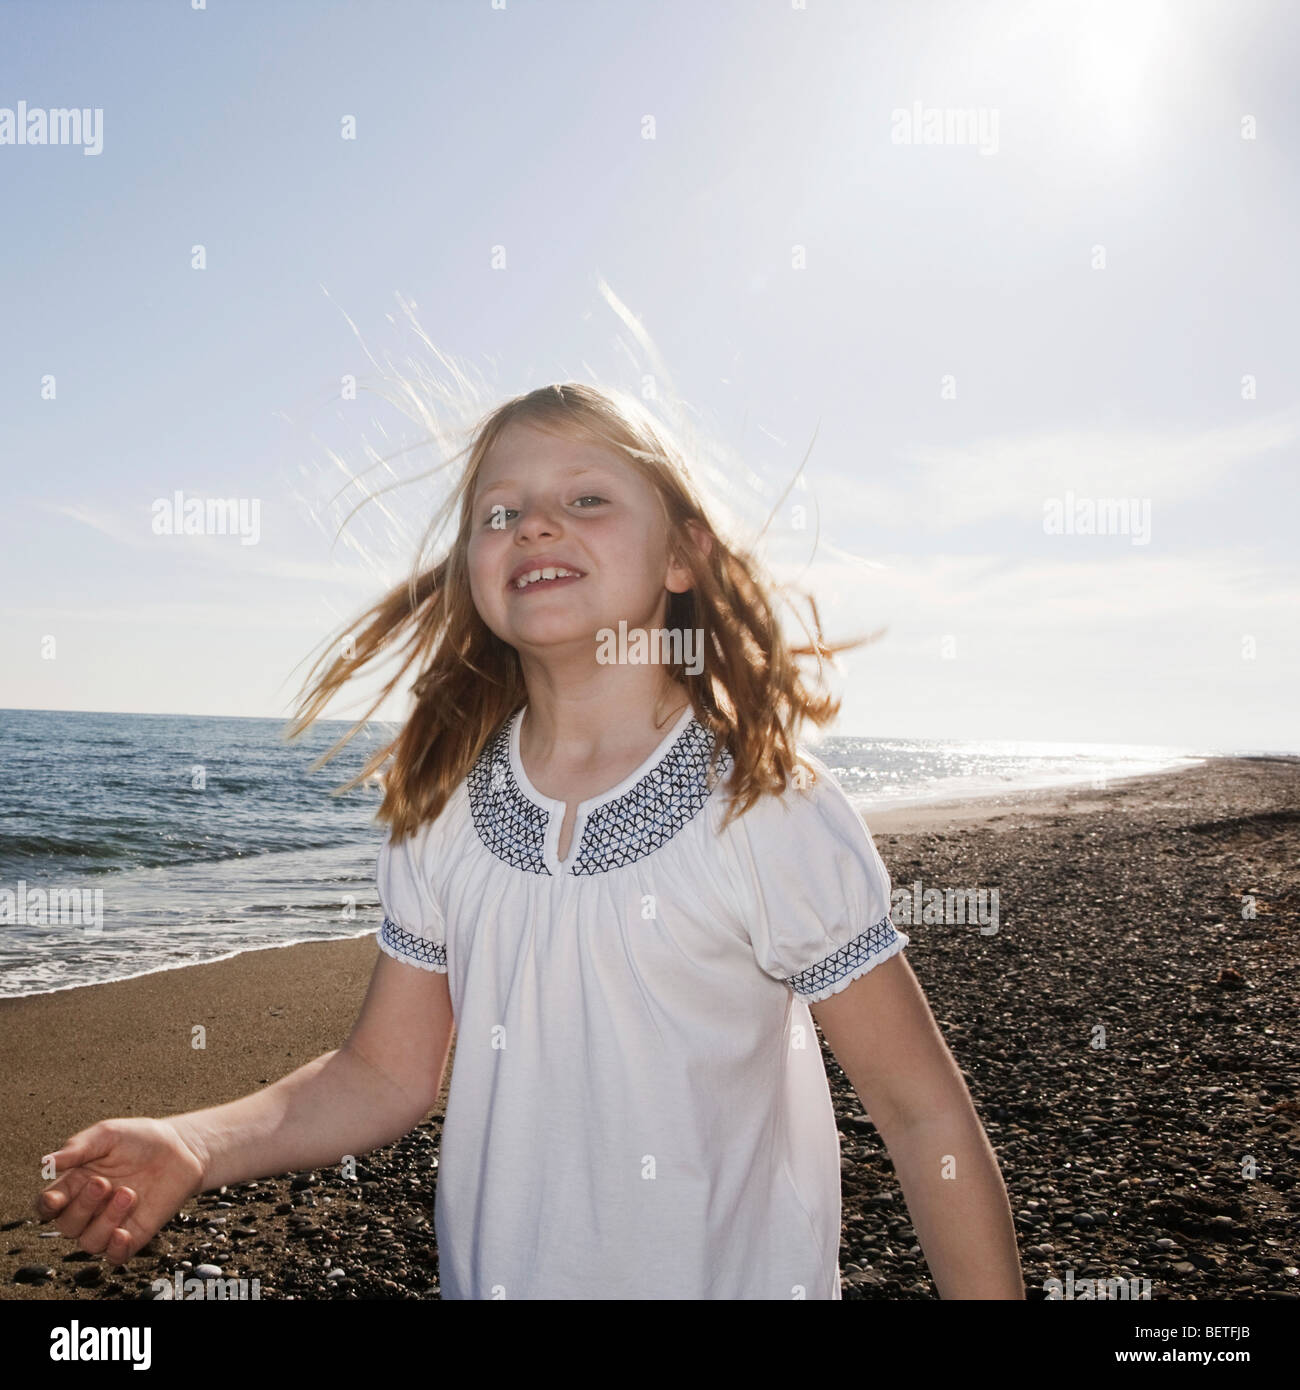 Girl at beach smiling at camera Banque D'Images